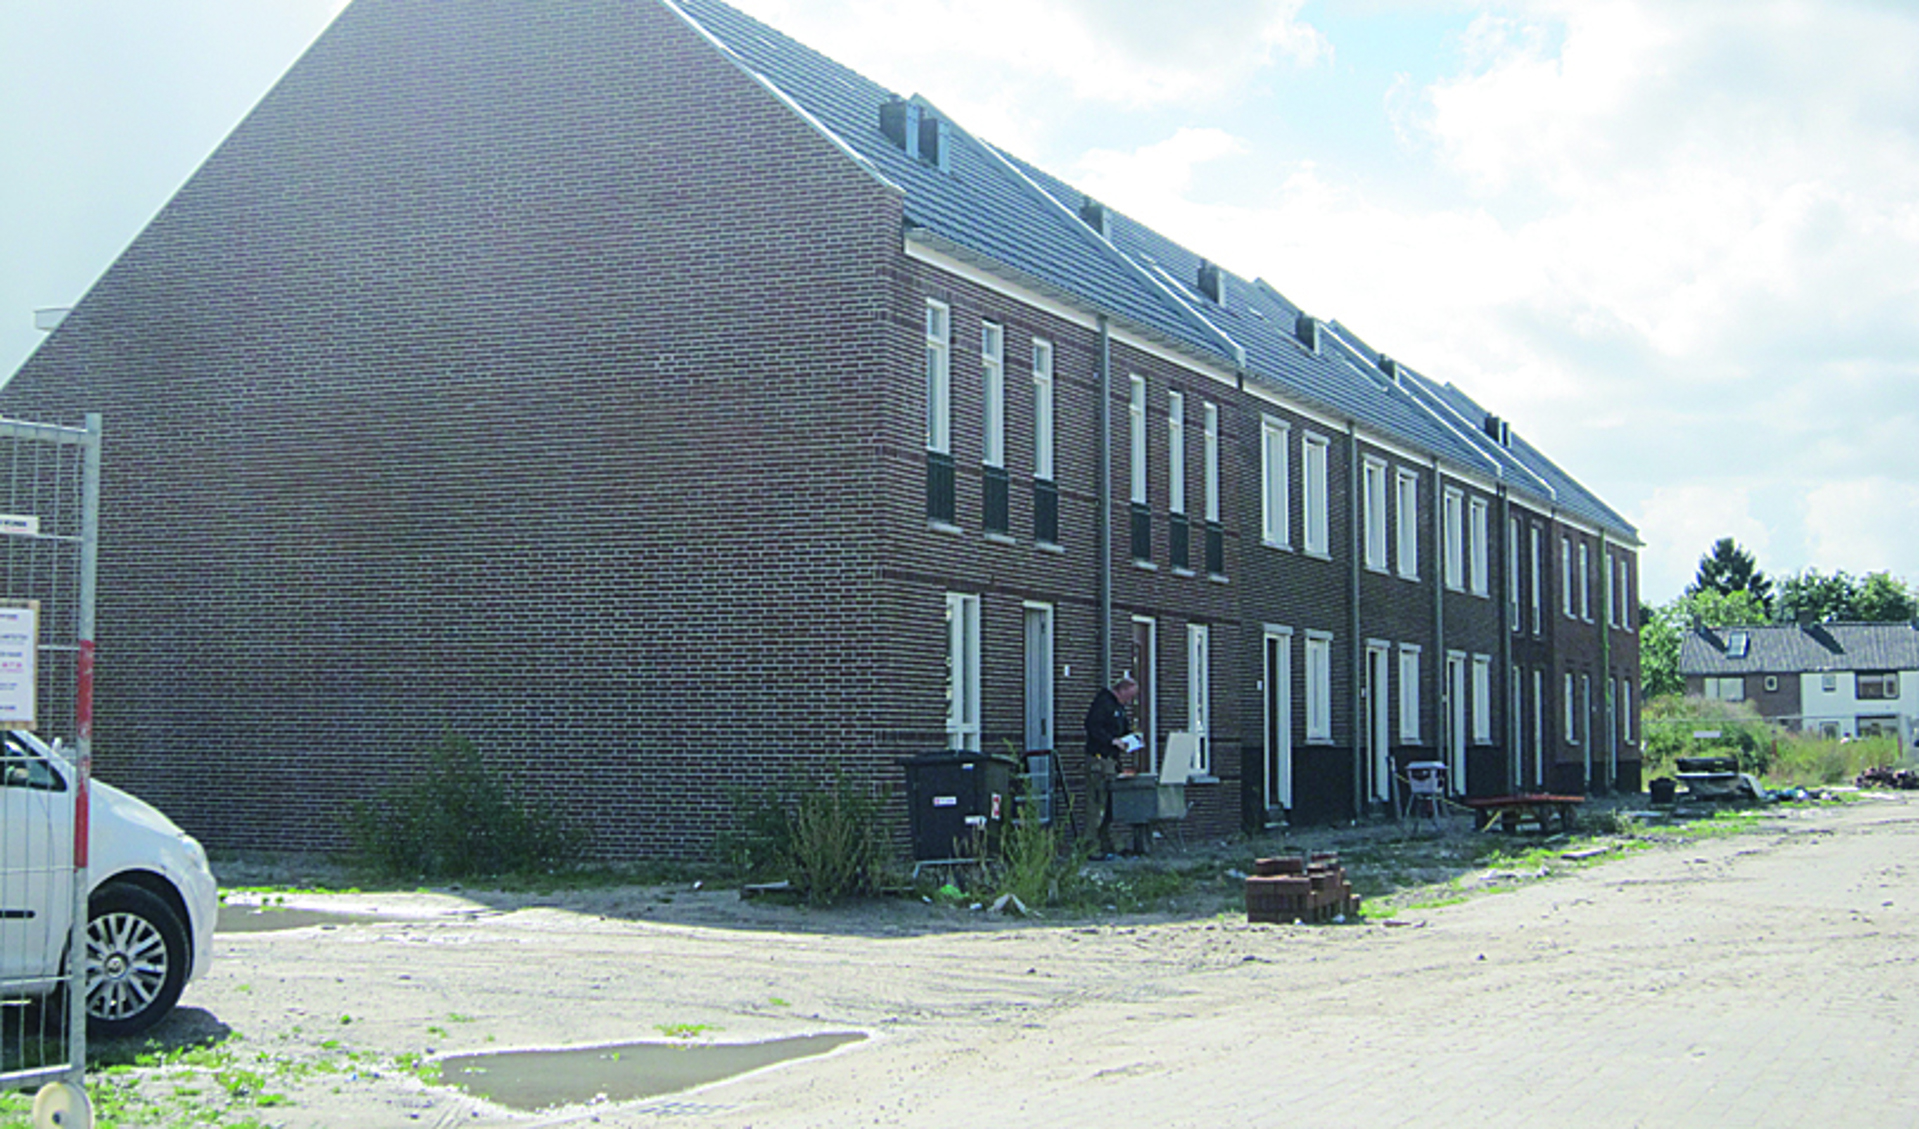 Woningen die dit jaar in Langbroek zijn opgeleverd